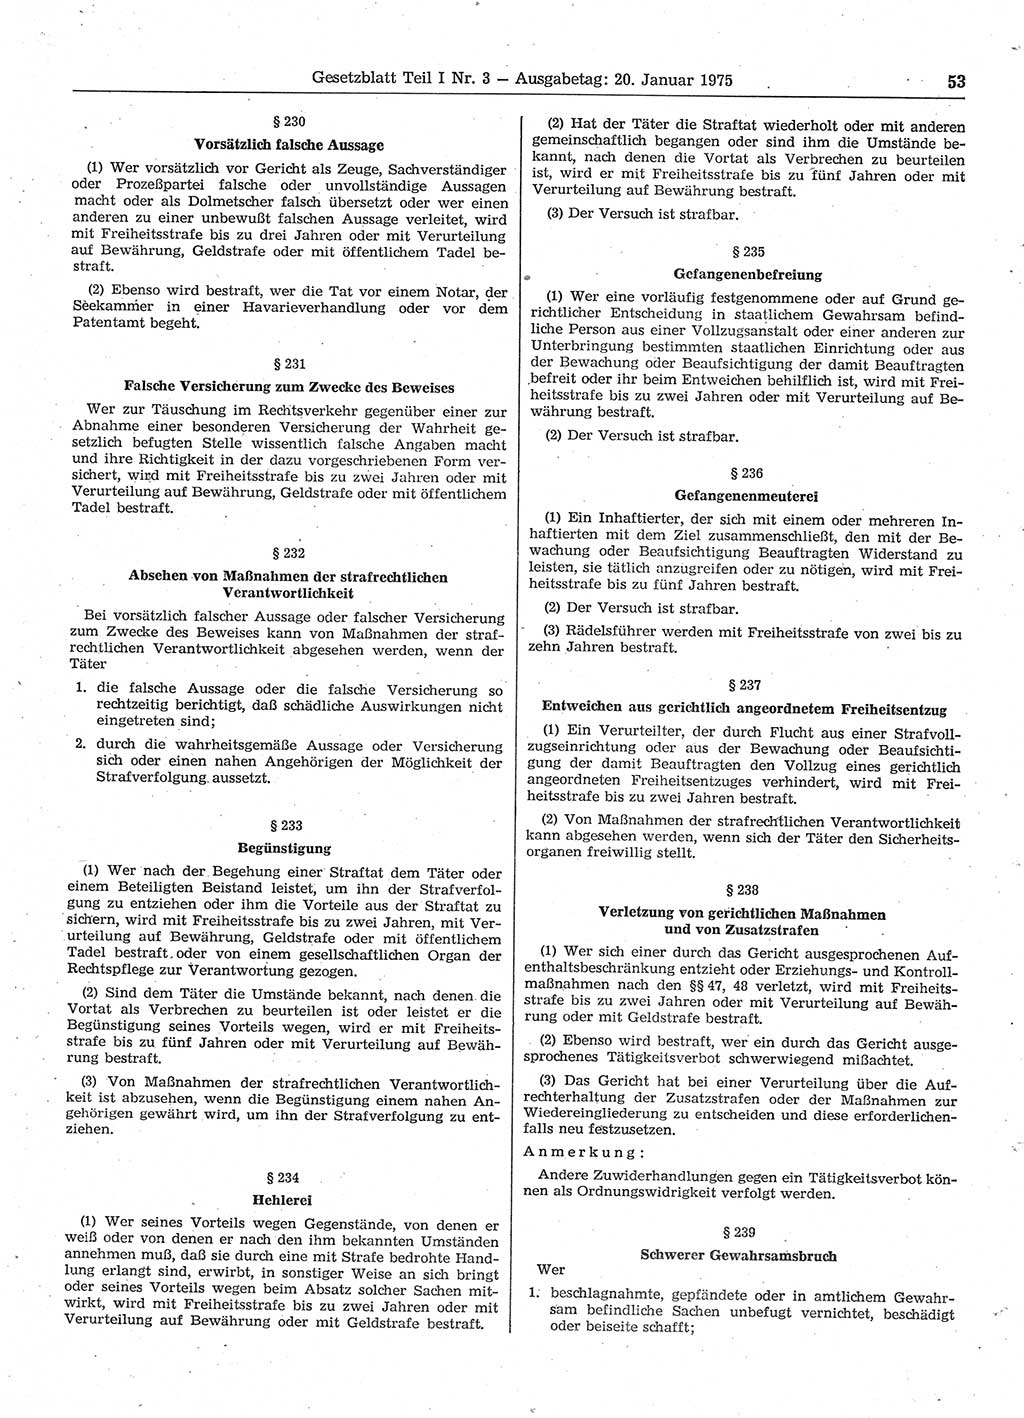 Gesetzblatt (GBl.) der Deutschen Demokratischen Republik (DDR) Teil Ⅰ 1975, Seite 53 (GBl. DDR Ⅰ 1975, S. 53)